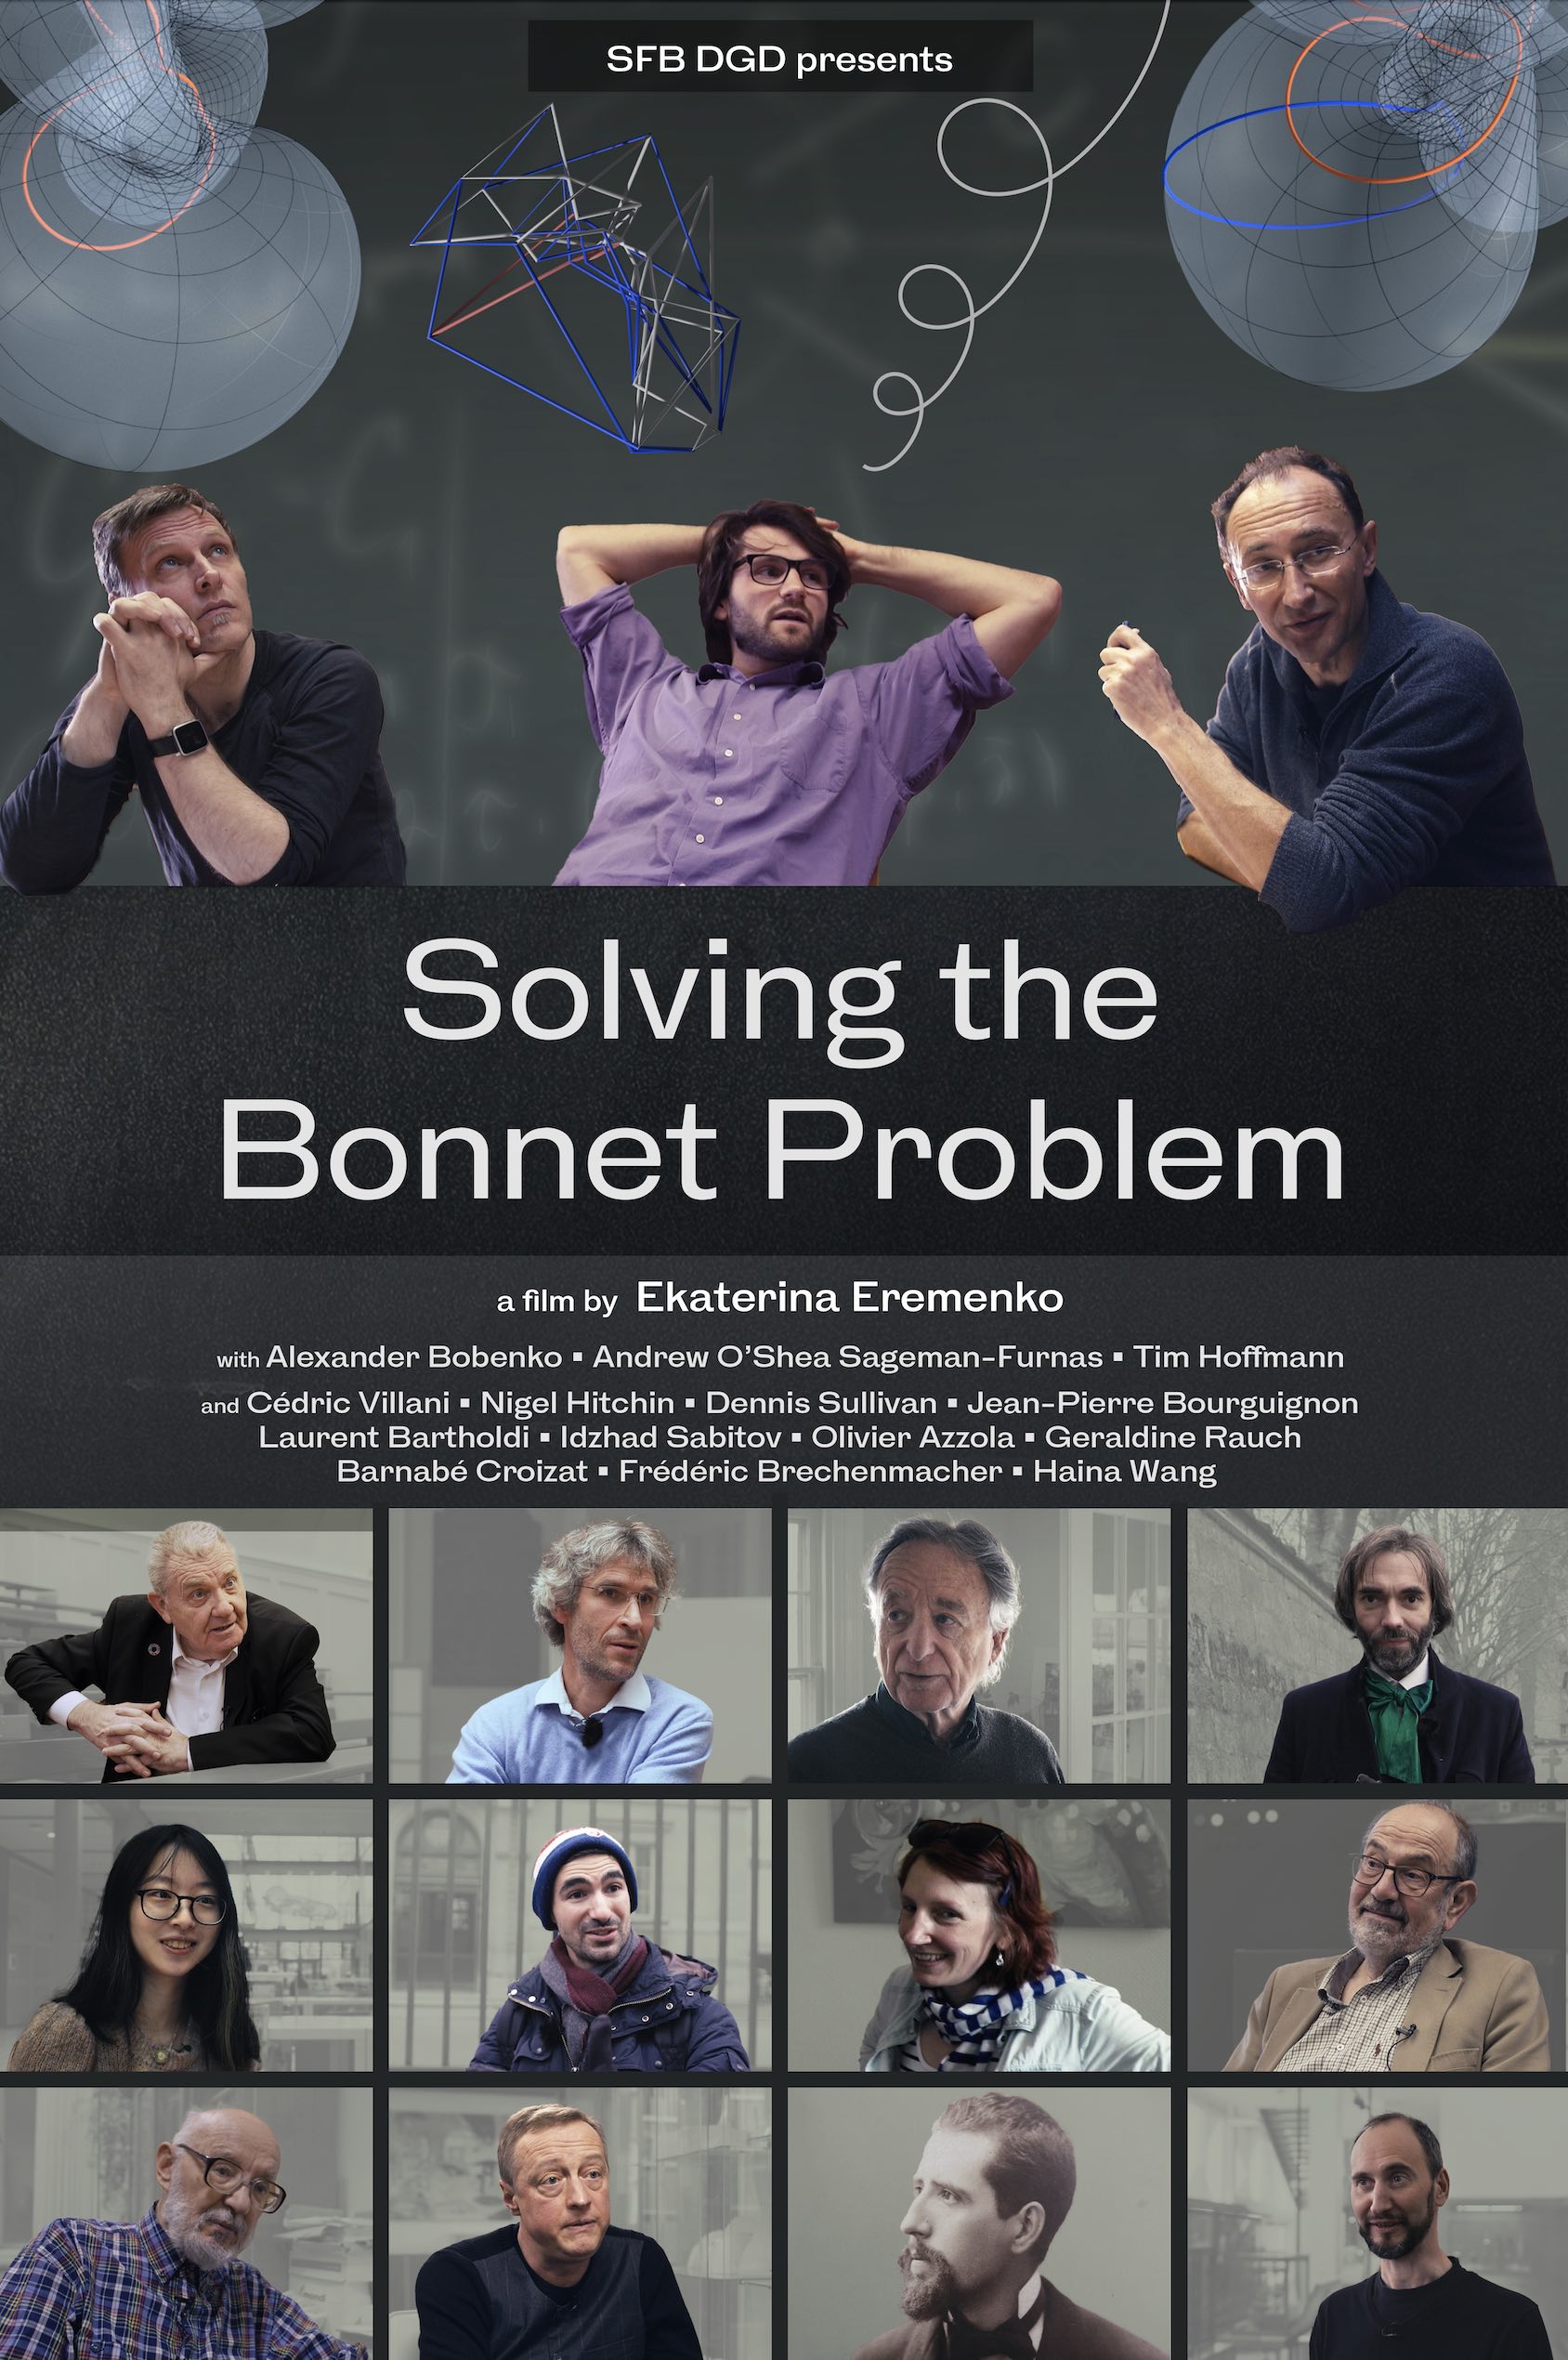 Bonnet problem